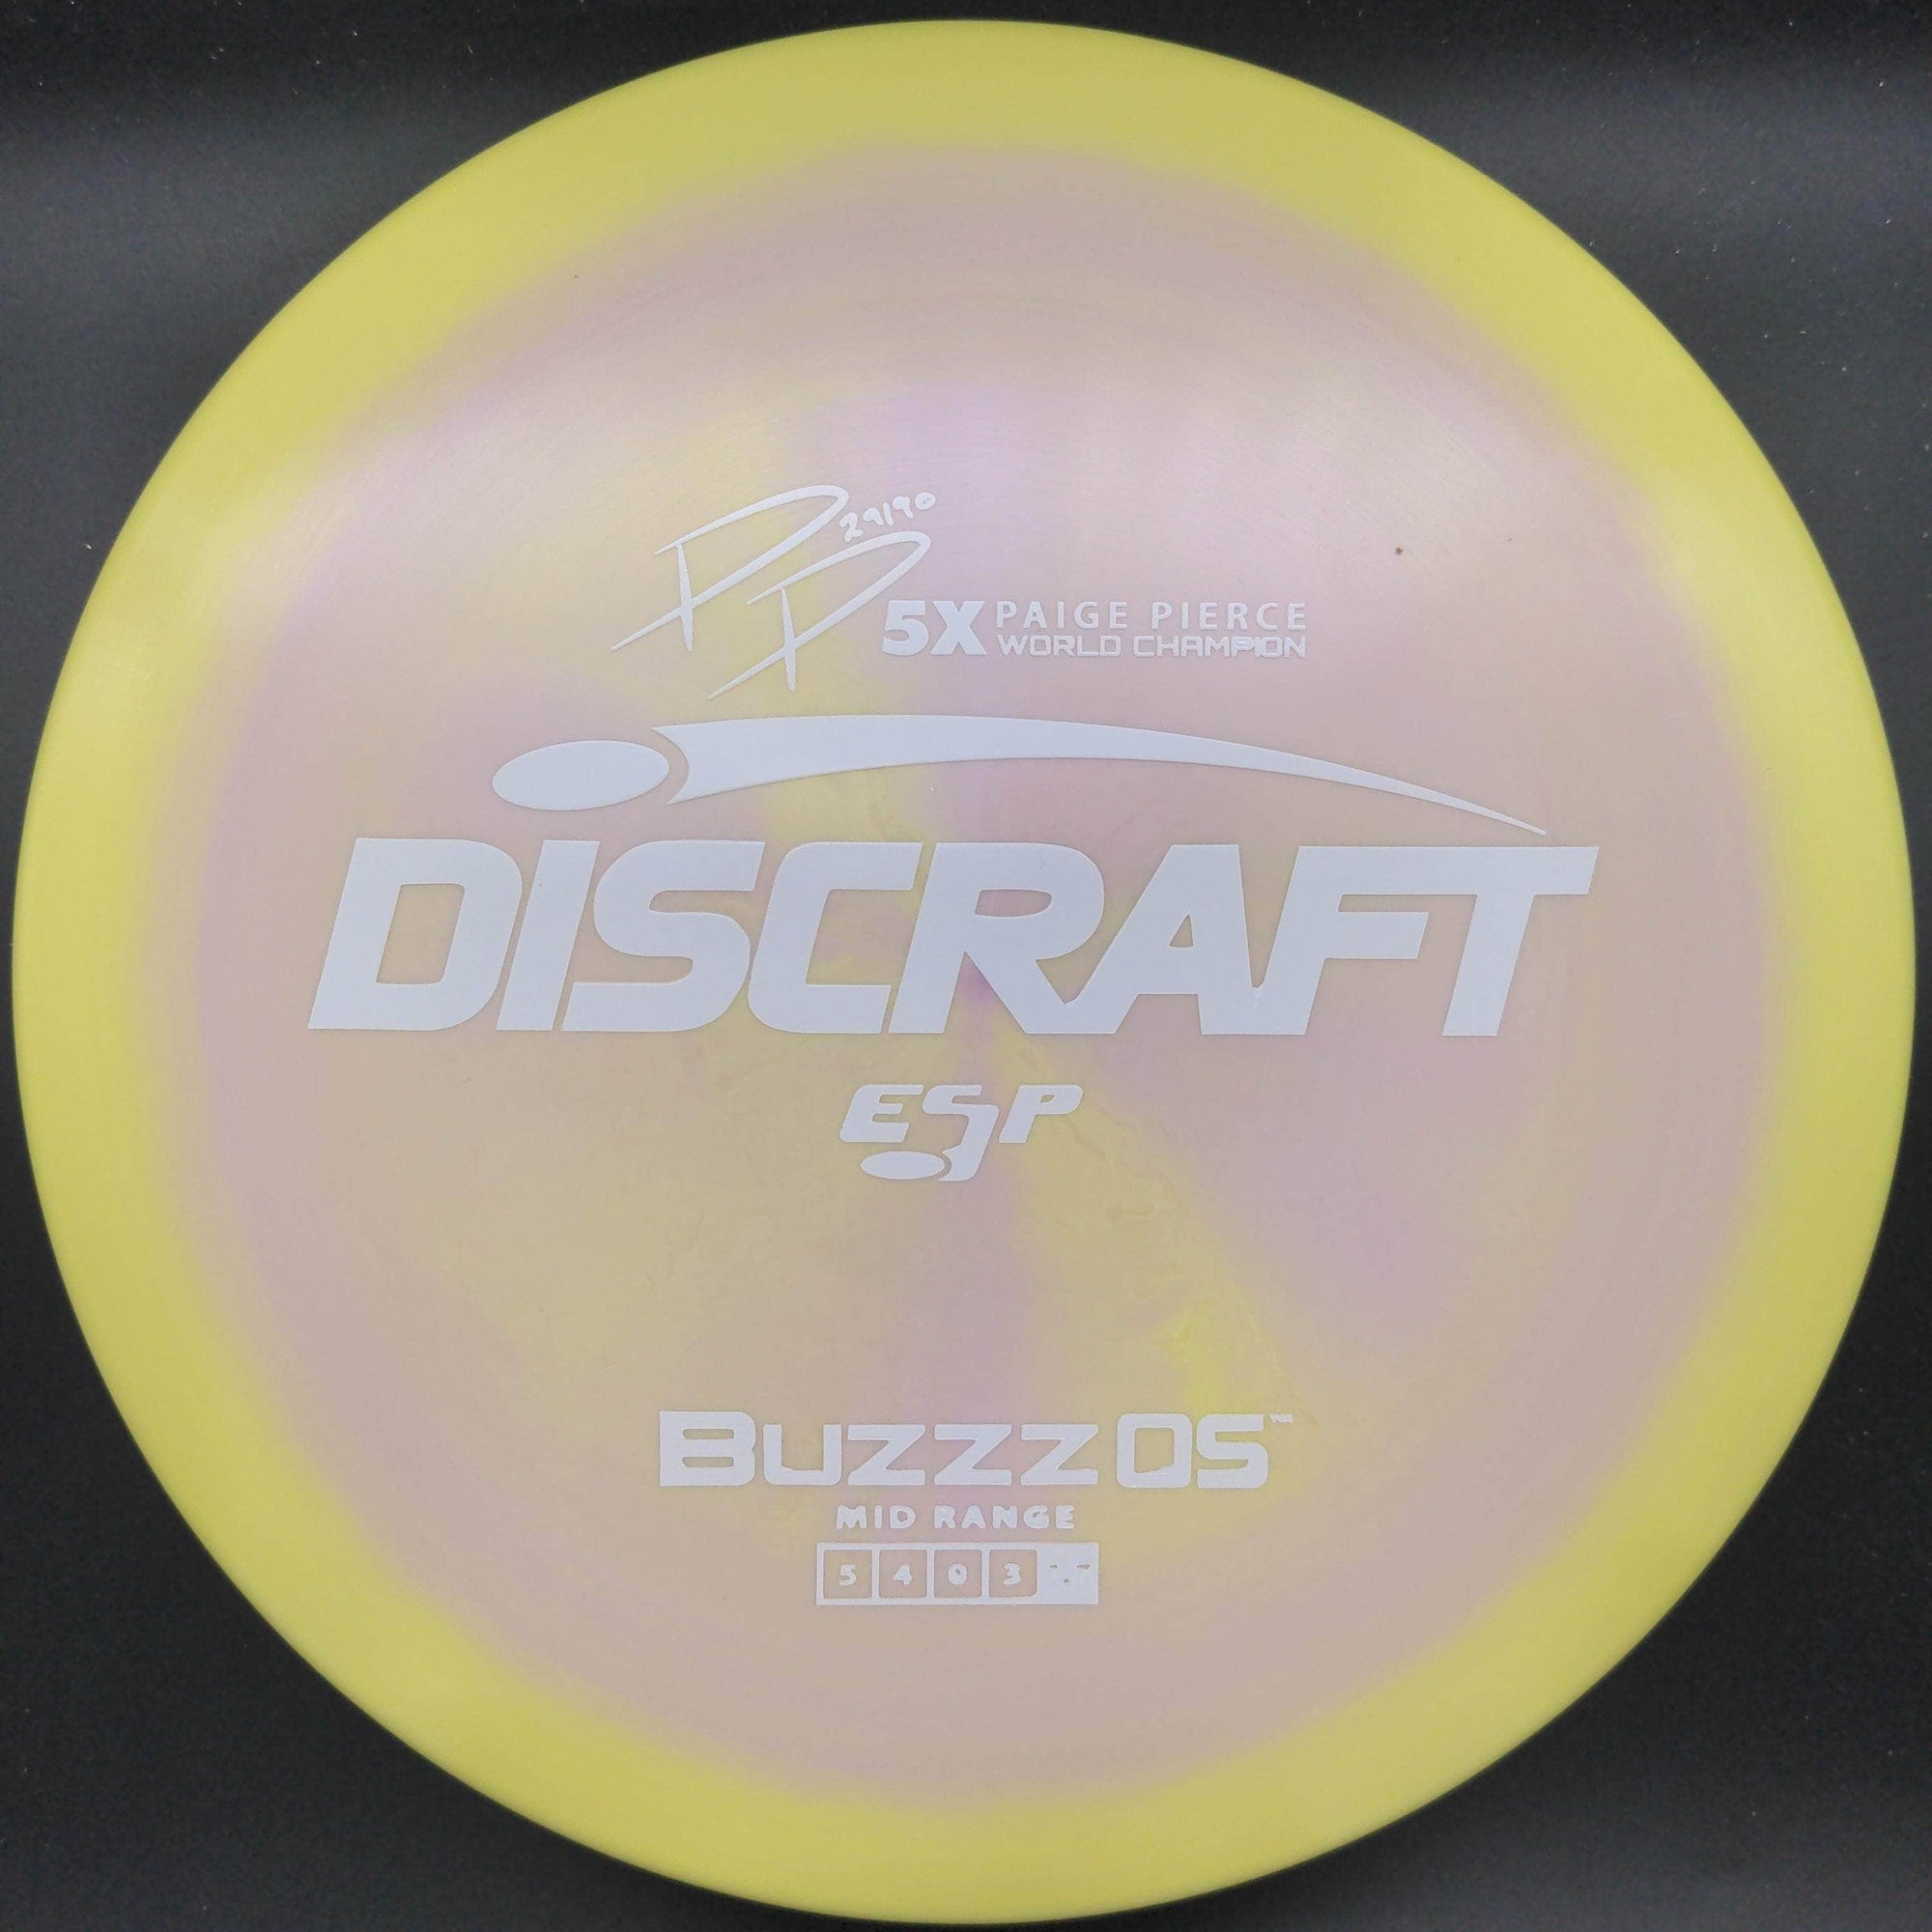 Discraft Mid Range Orange/Pink Gold Digi Stamp 177+ Buzzz OS, Z line, Paige Pierce 5x World Champion